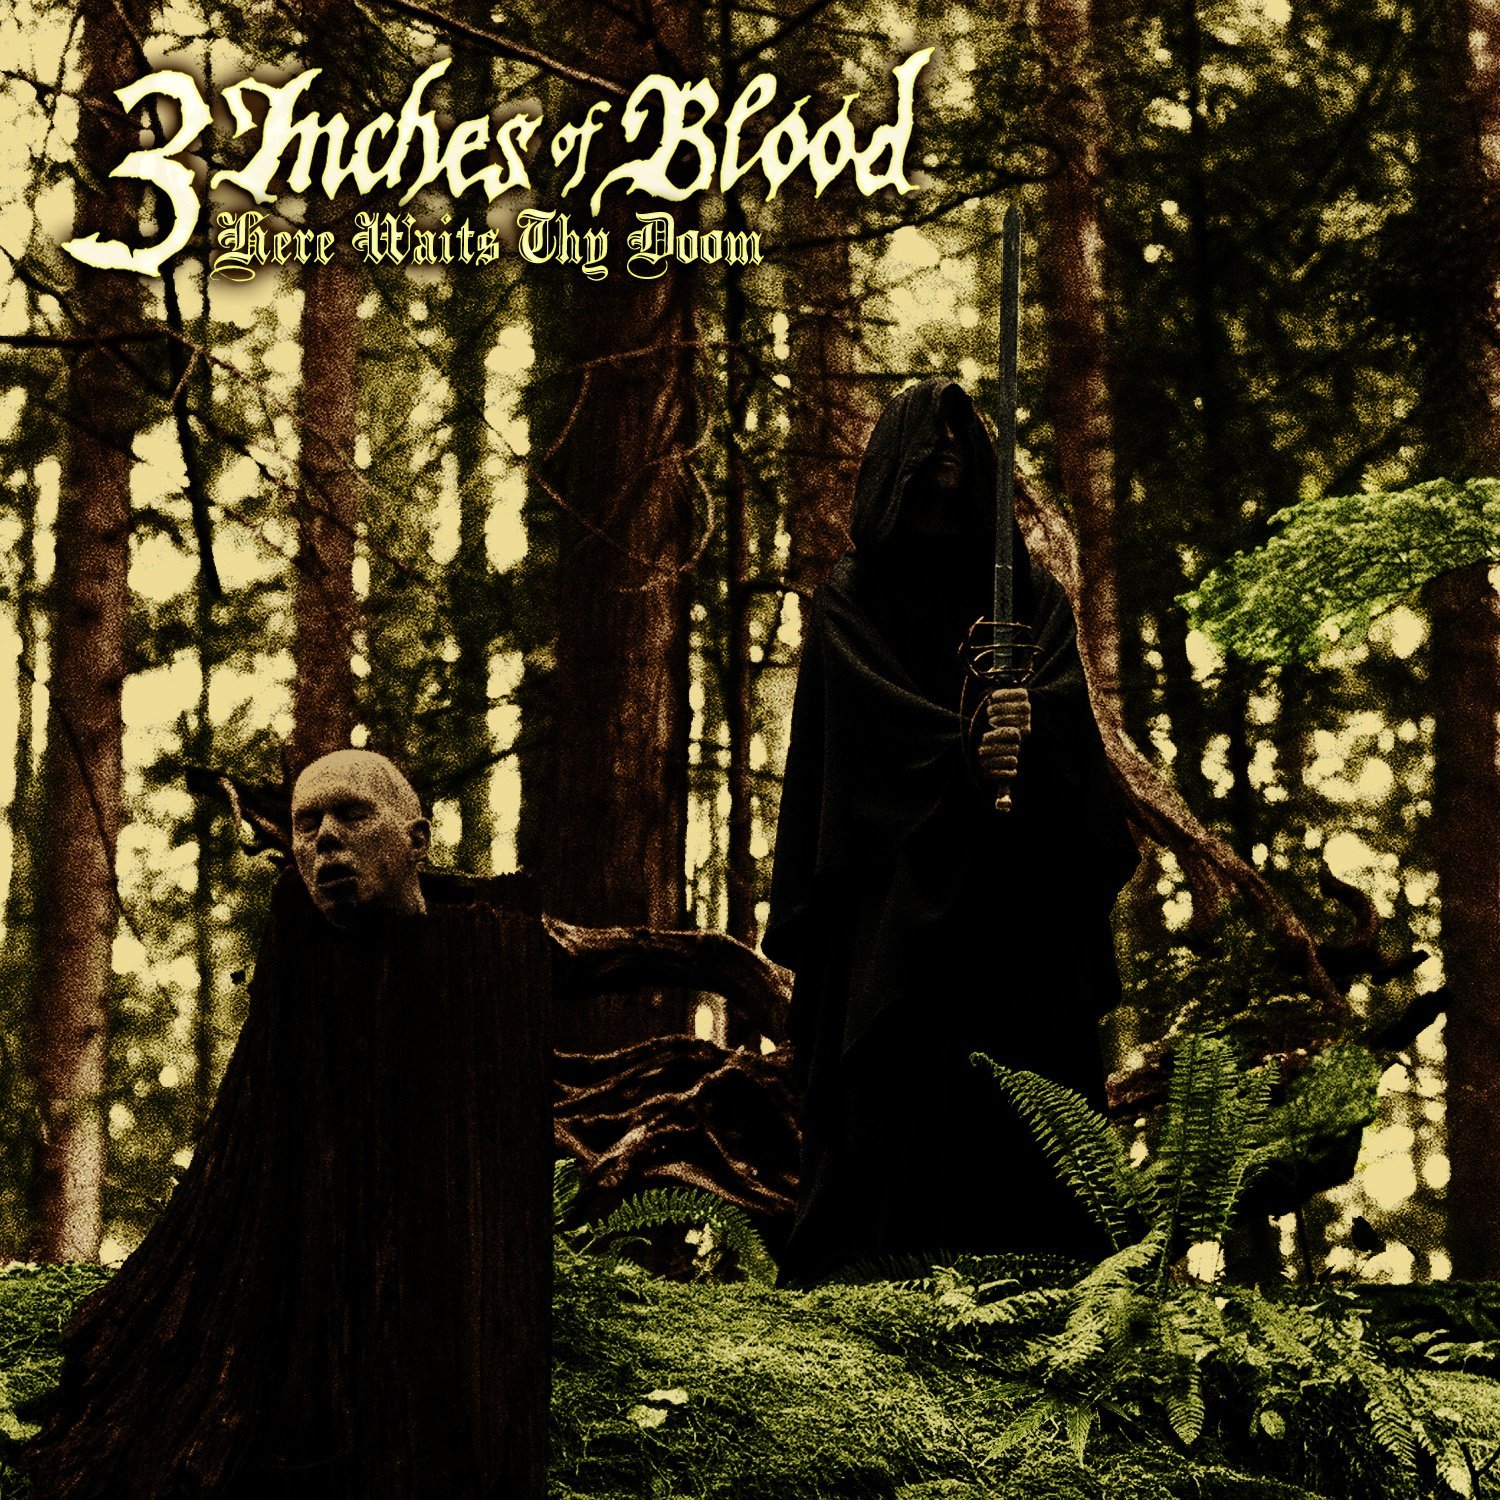 3 Inches Of Blood - Here Waits Thy Doom (Ltd Ed. Digipak)